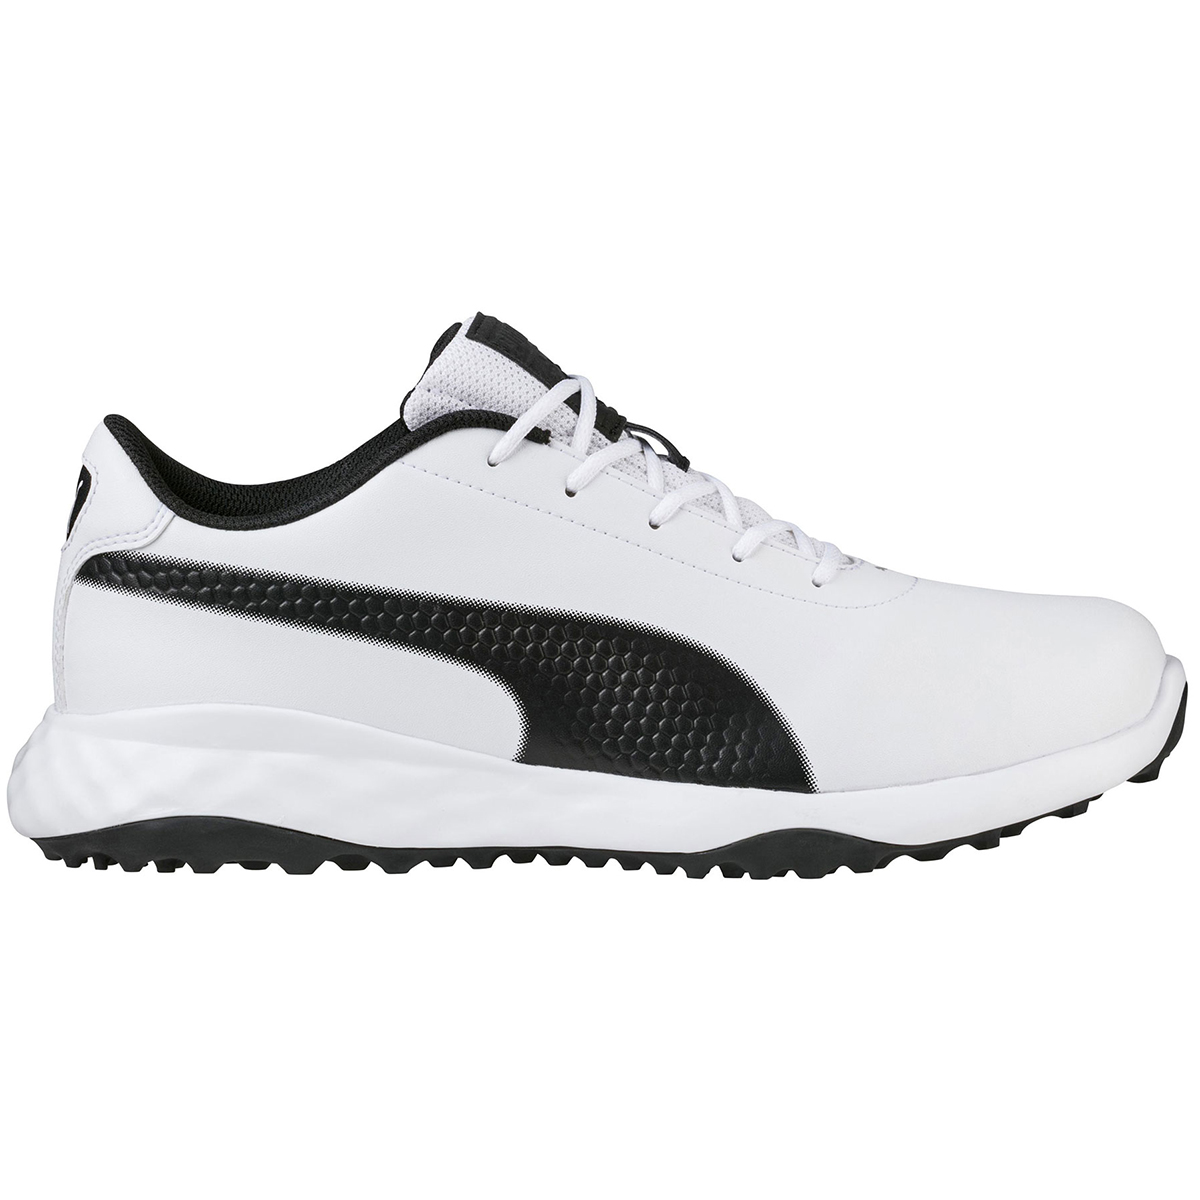 puma golf shoes clearance sale